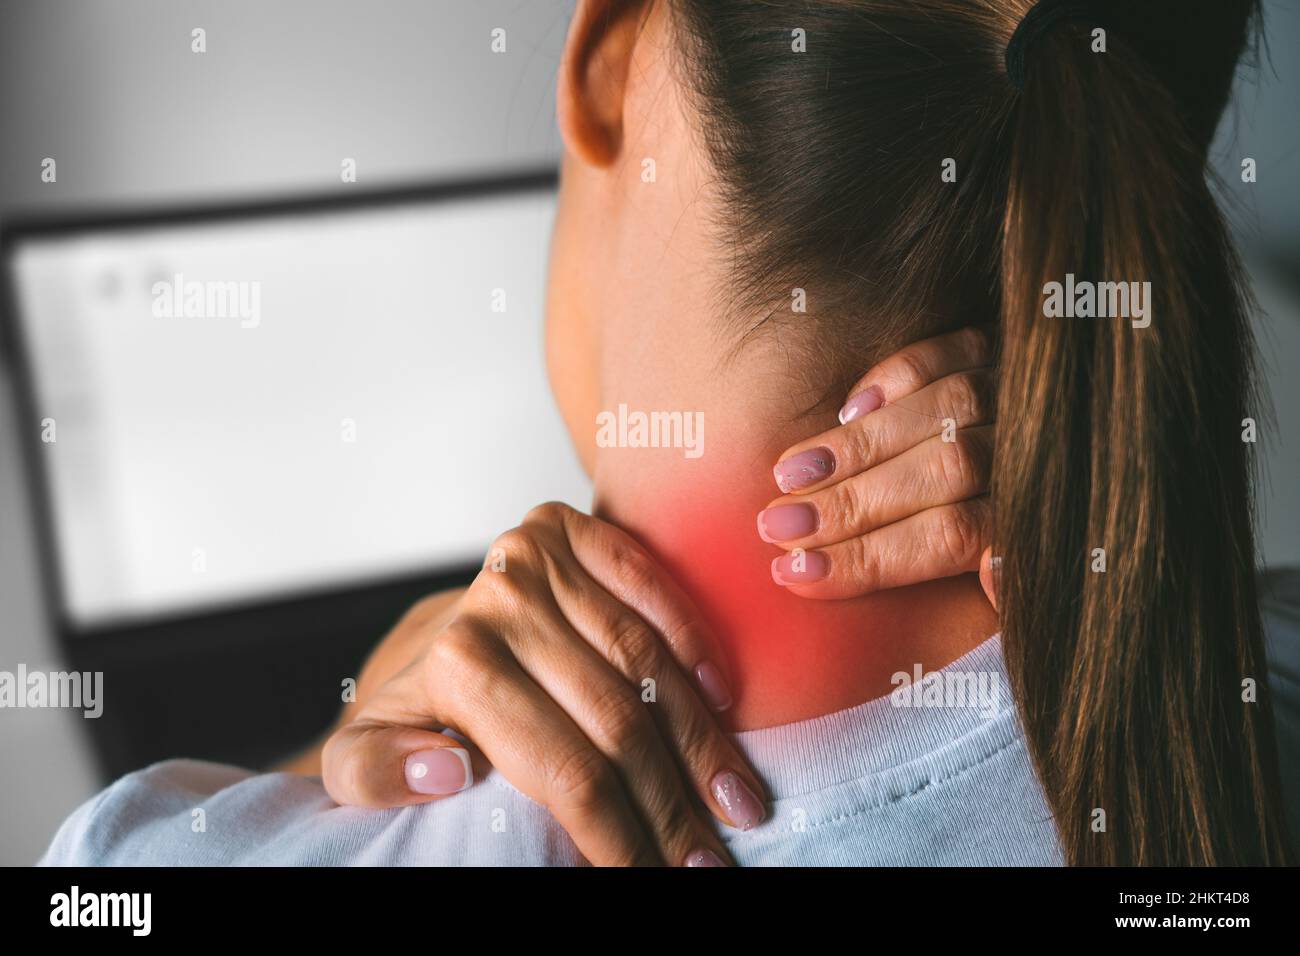 Dolore al collo dopo aver lavorato sul computer. Giovane donna che massaggiano il collo per alleviare il dolore dopo aver lavorato sul pc Foto Stock